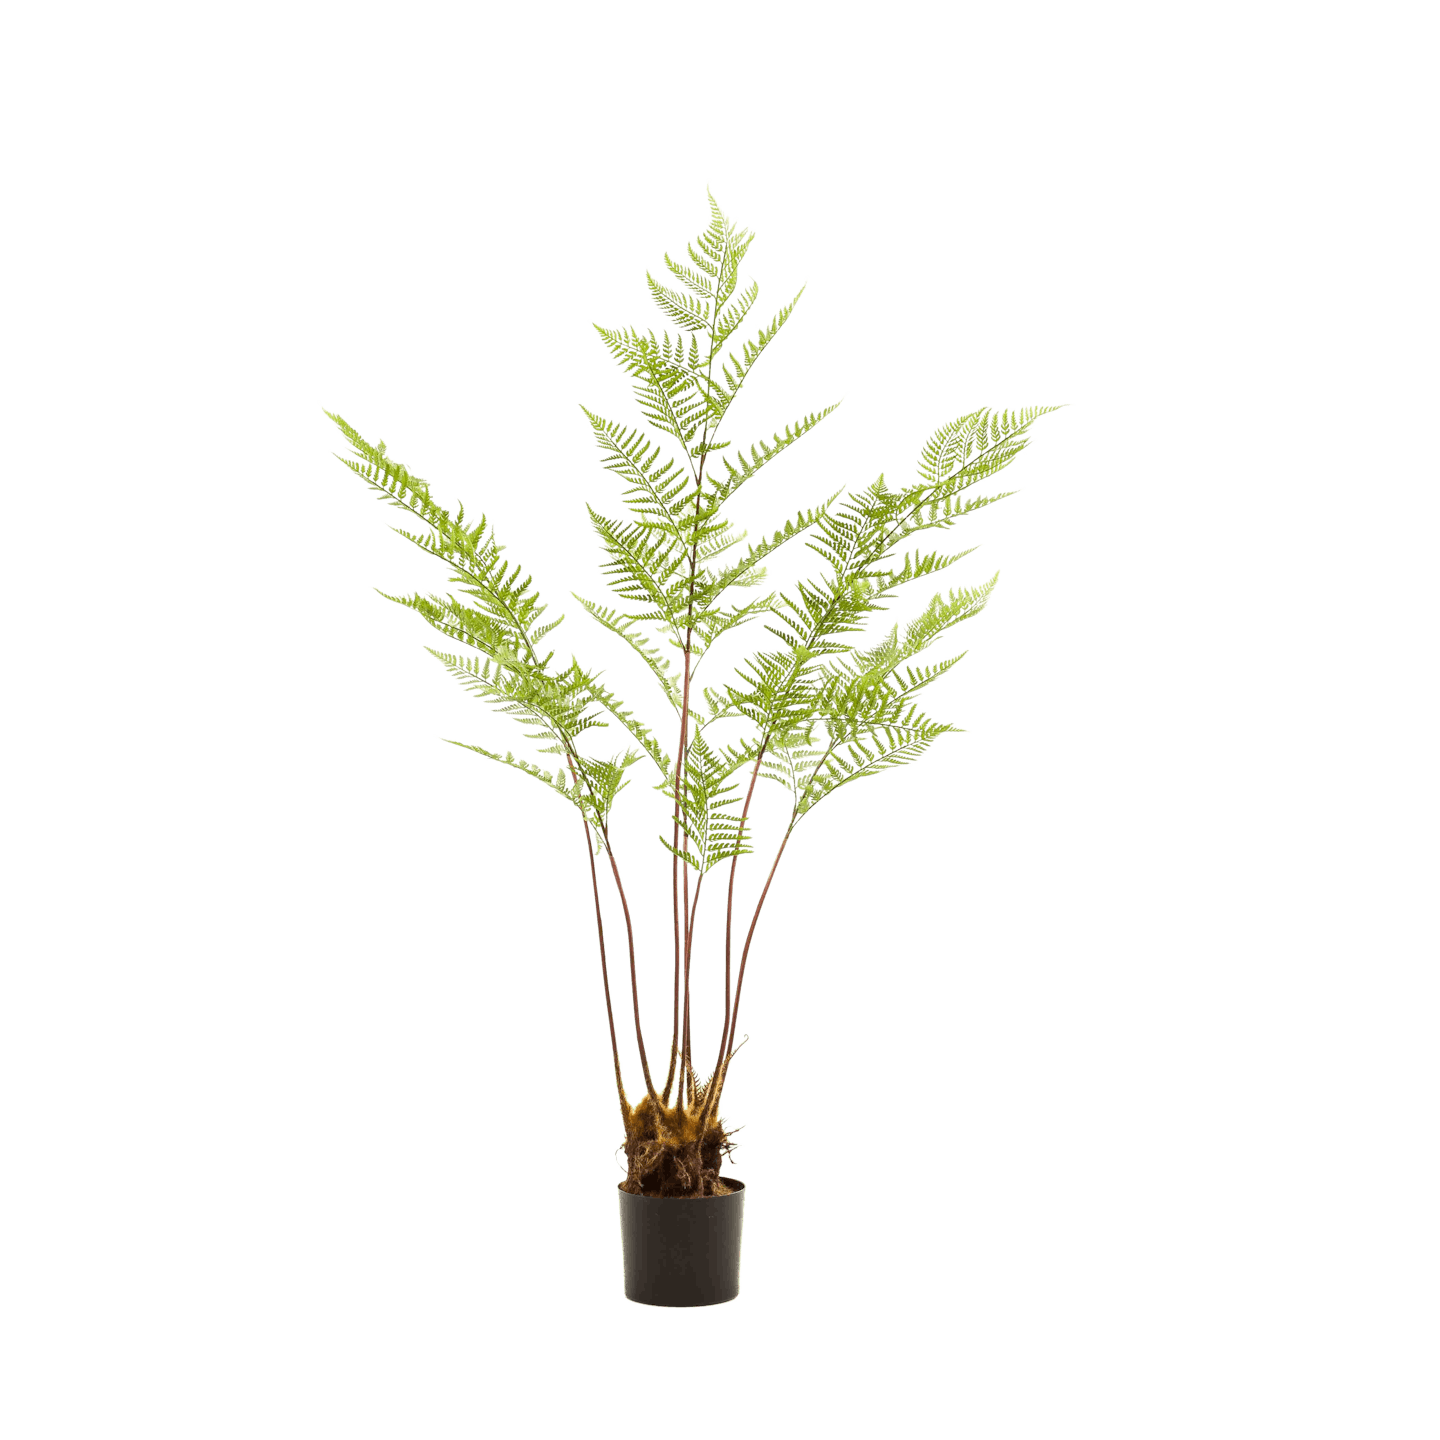 5ft artificial fern tree